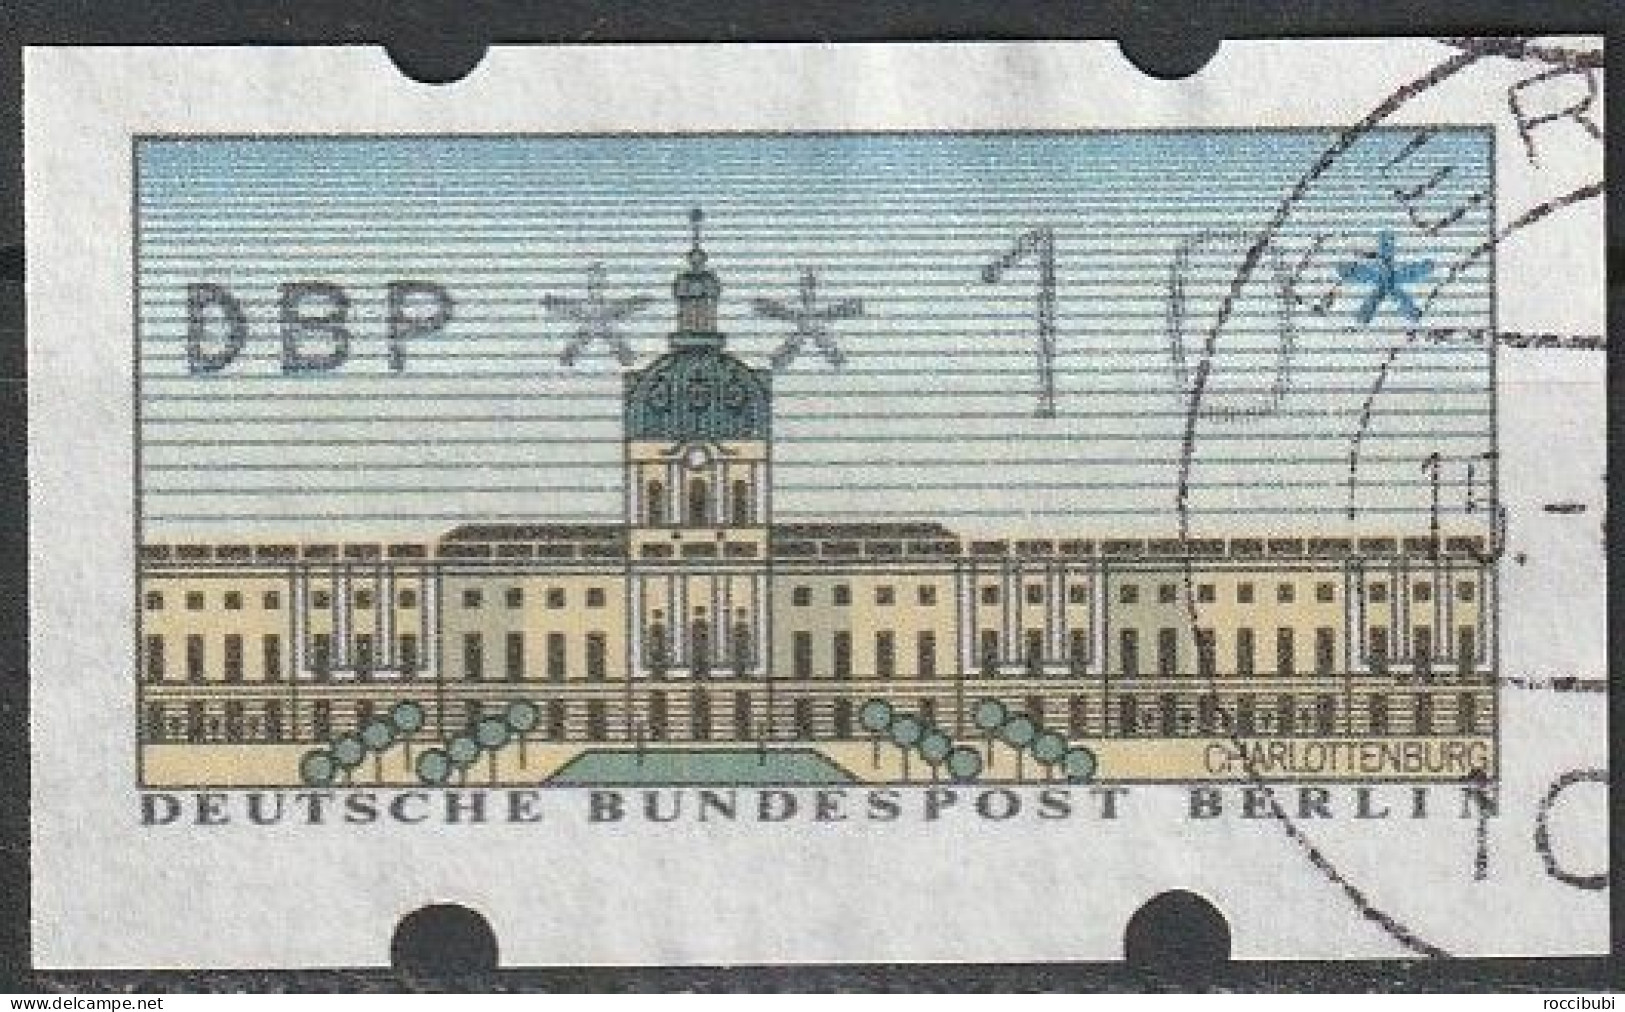 Berlin ATM 0,10 DM - Machine Labels [ATM]